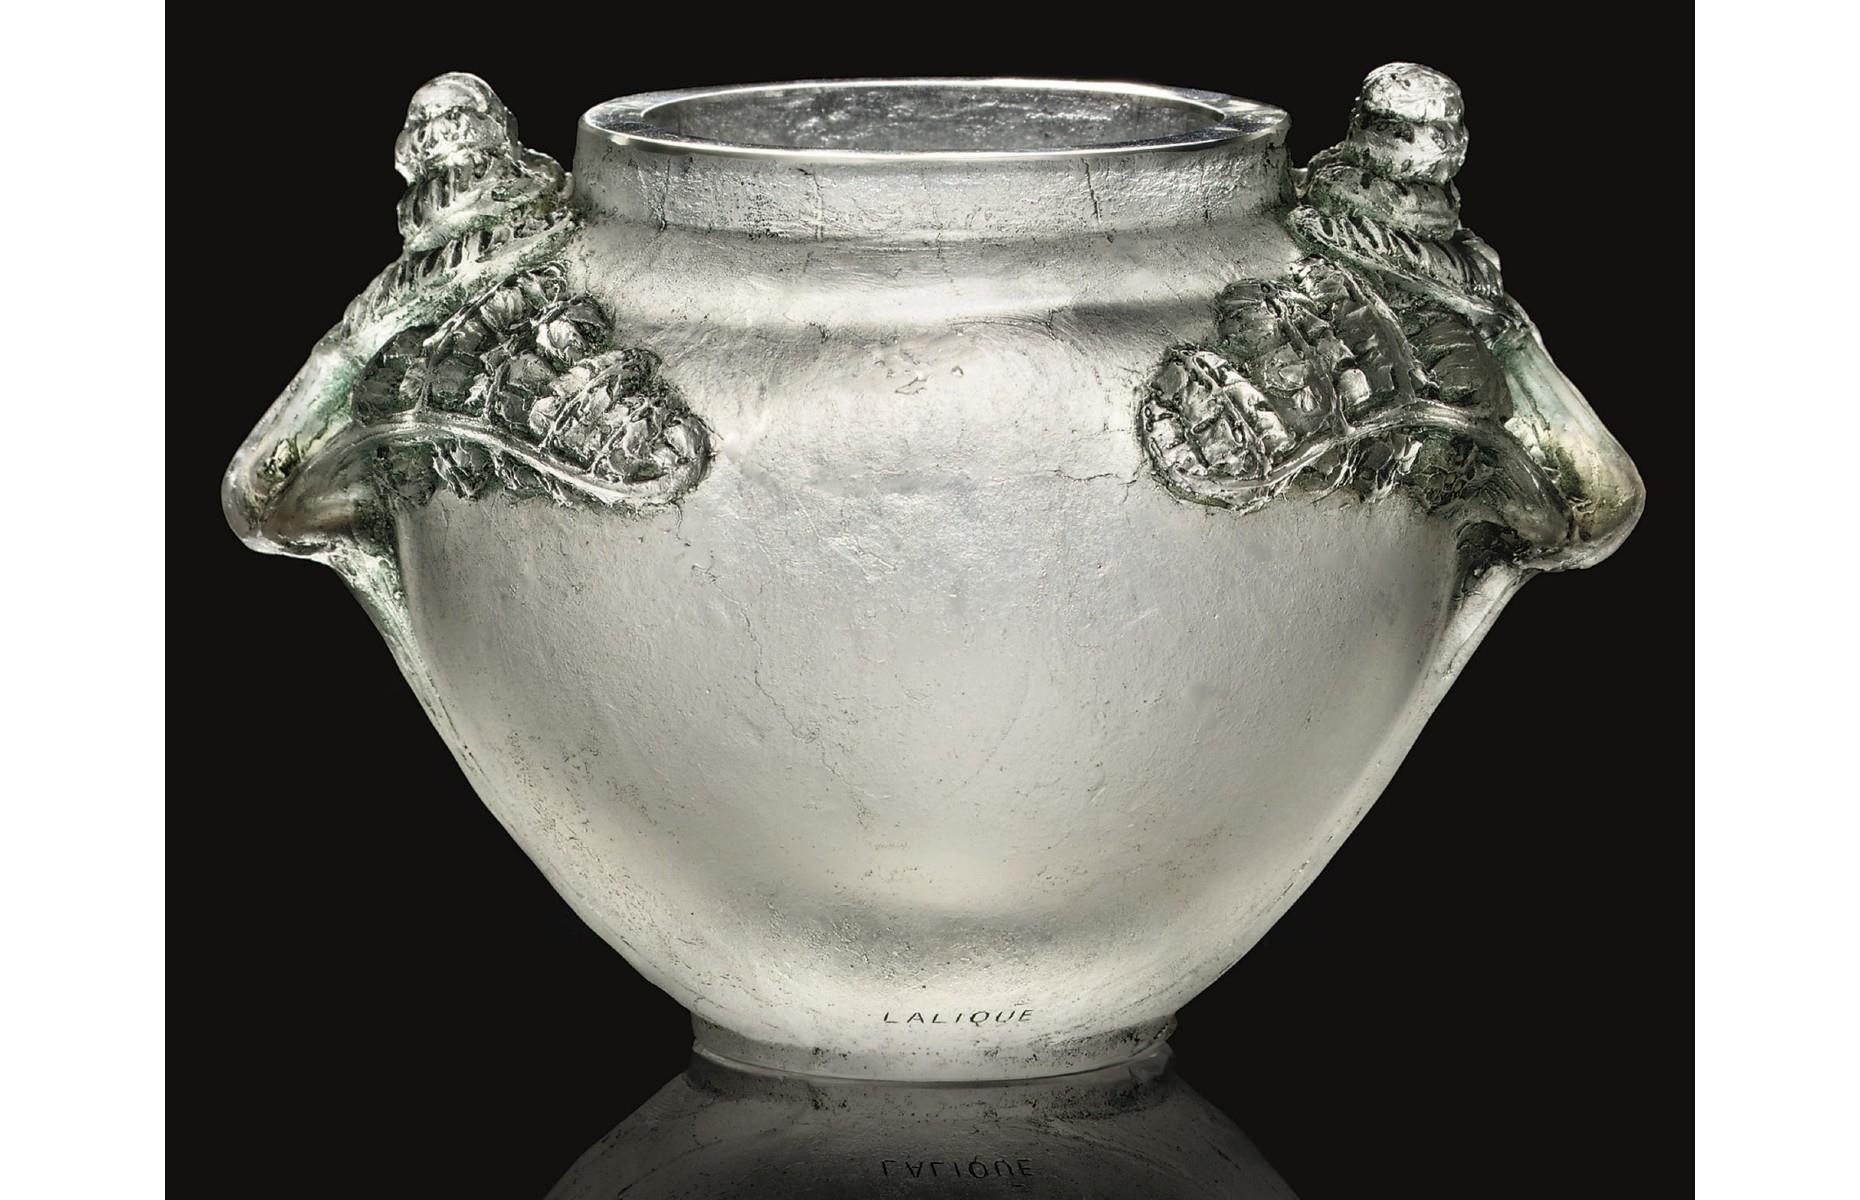 The René Lalique Feuilles Fougères vase